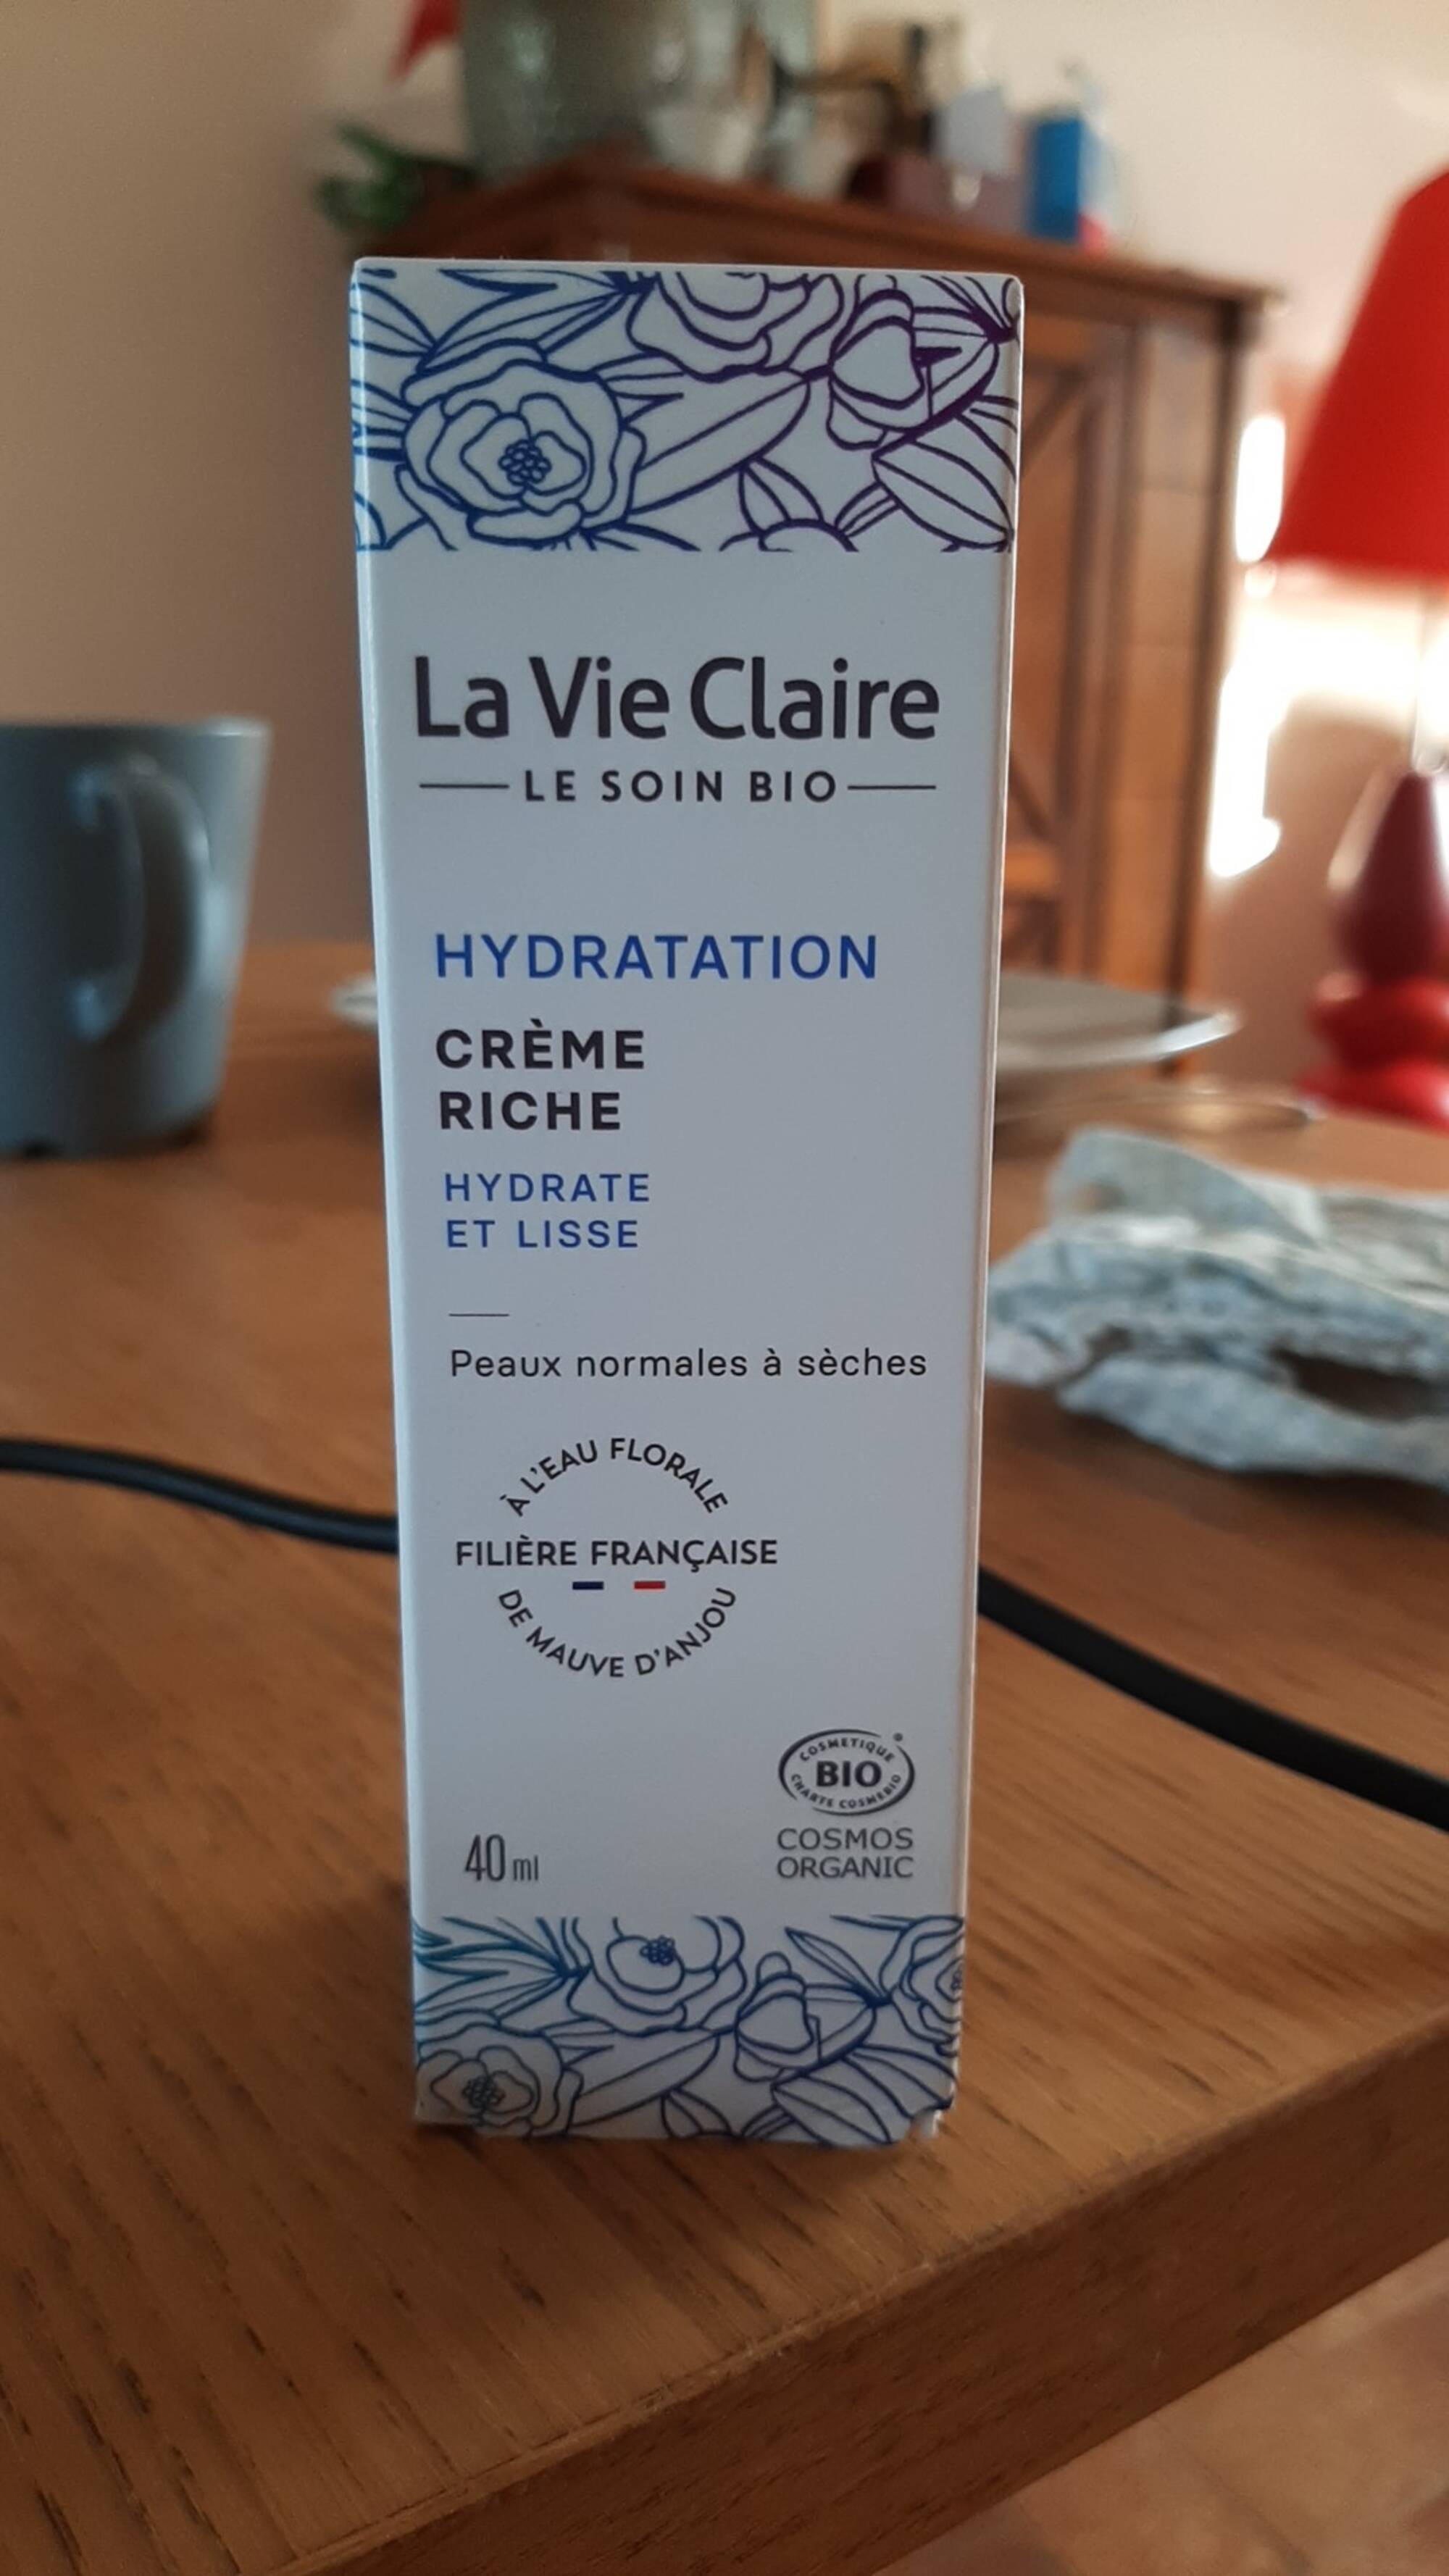 Le beurre de Karité - La Vie Claire